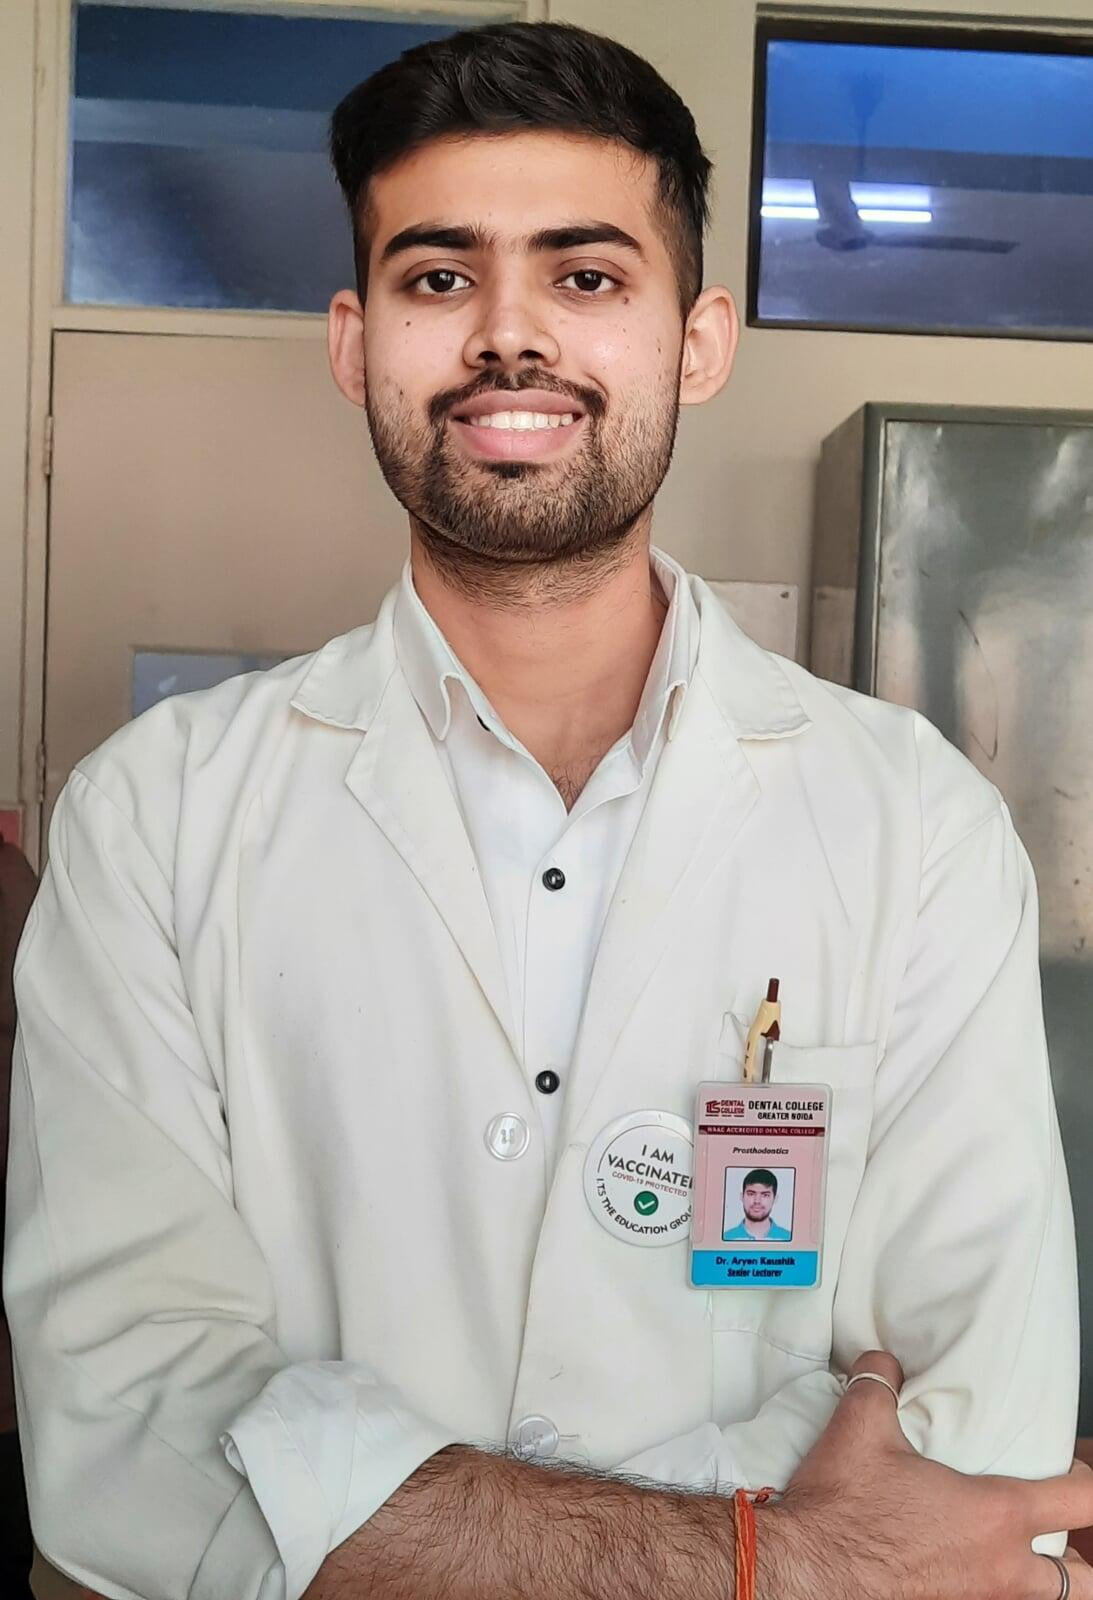 ITS Dental Hospital Dr. Priyanka Bhat